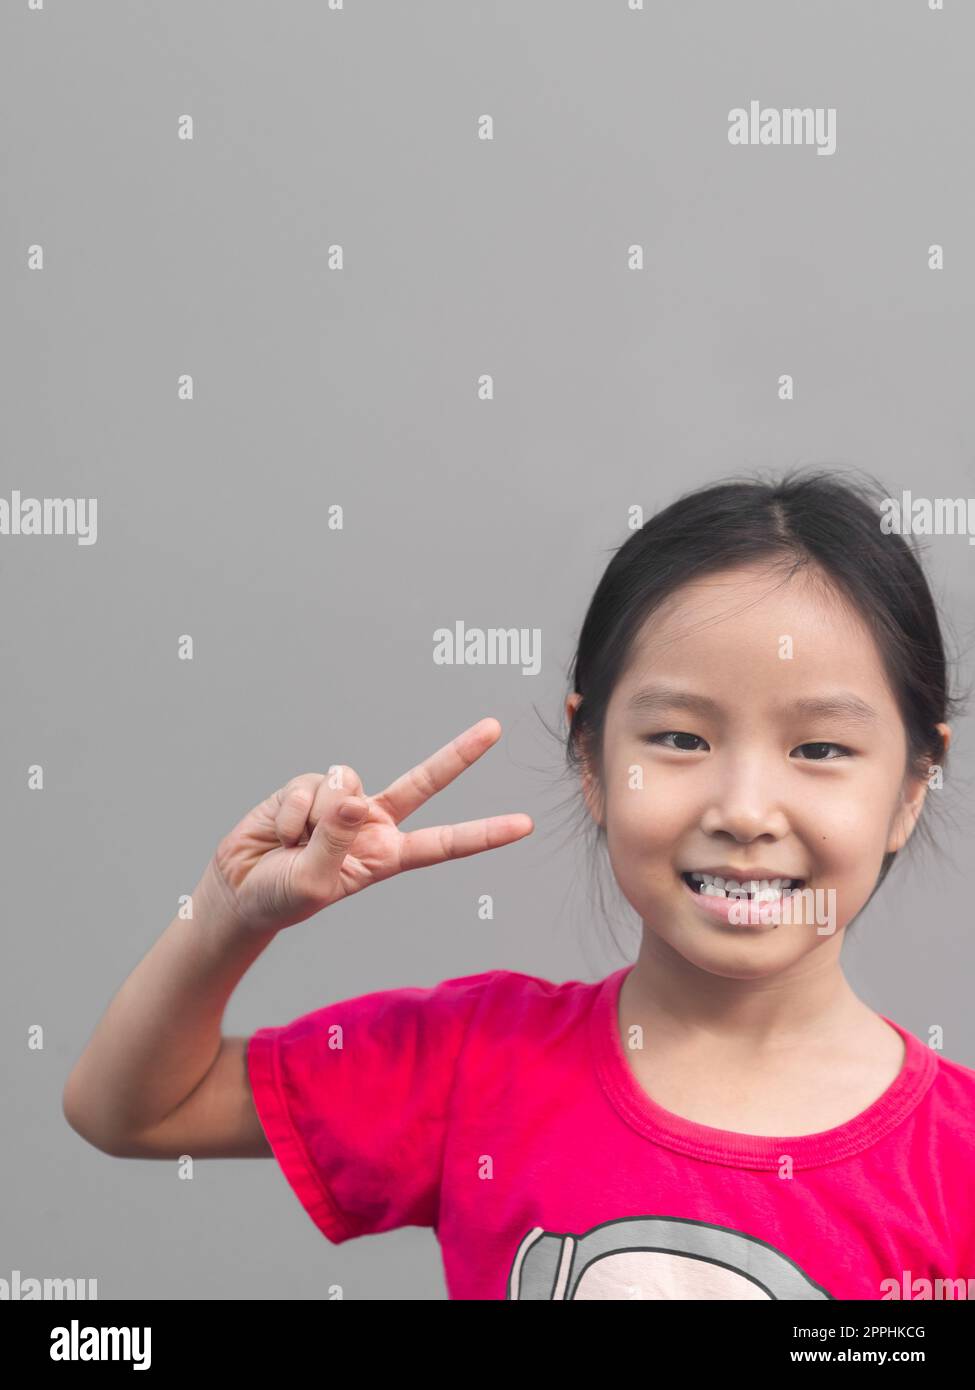 Petite fille asiatique mignon sourire avec sa dent cassée, fond gris Banque D'Images